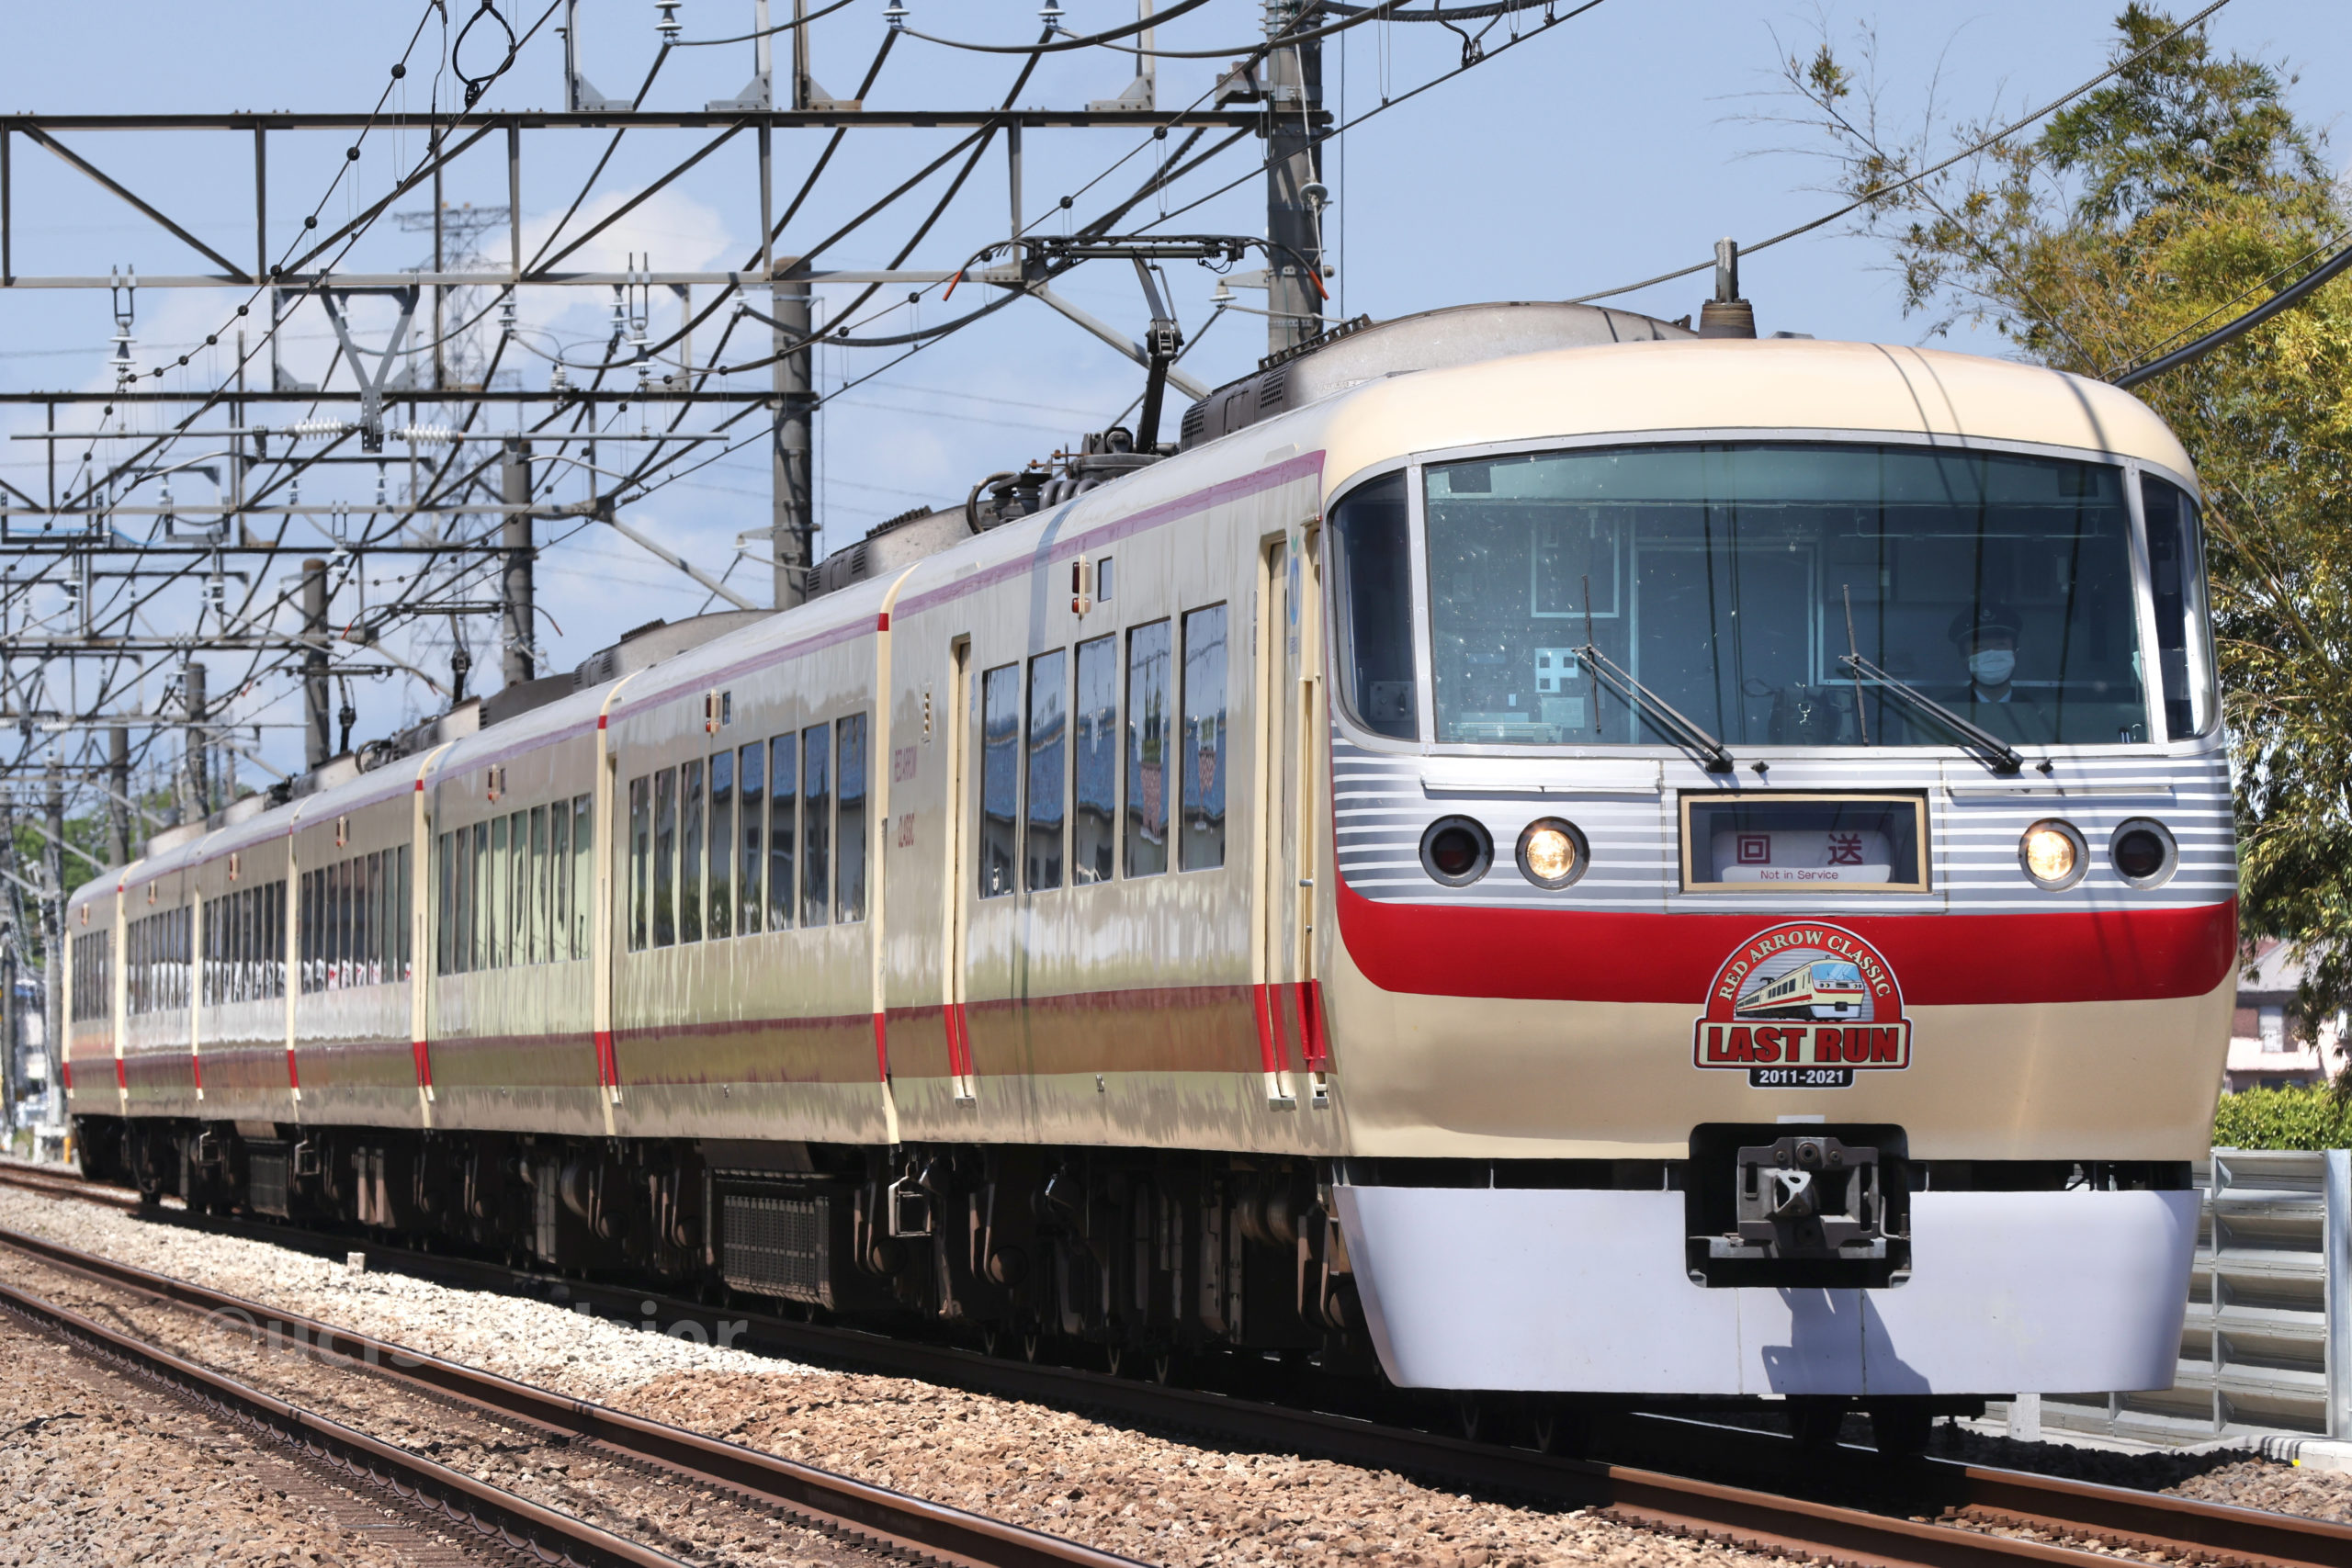 鉄道模型 西武鉄道 10000系 LAST Run